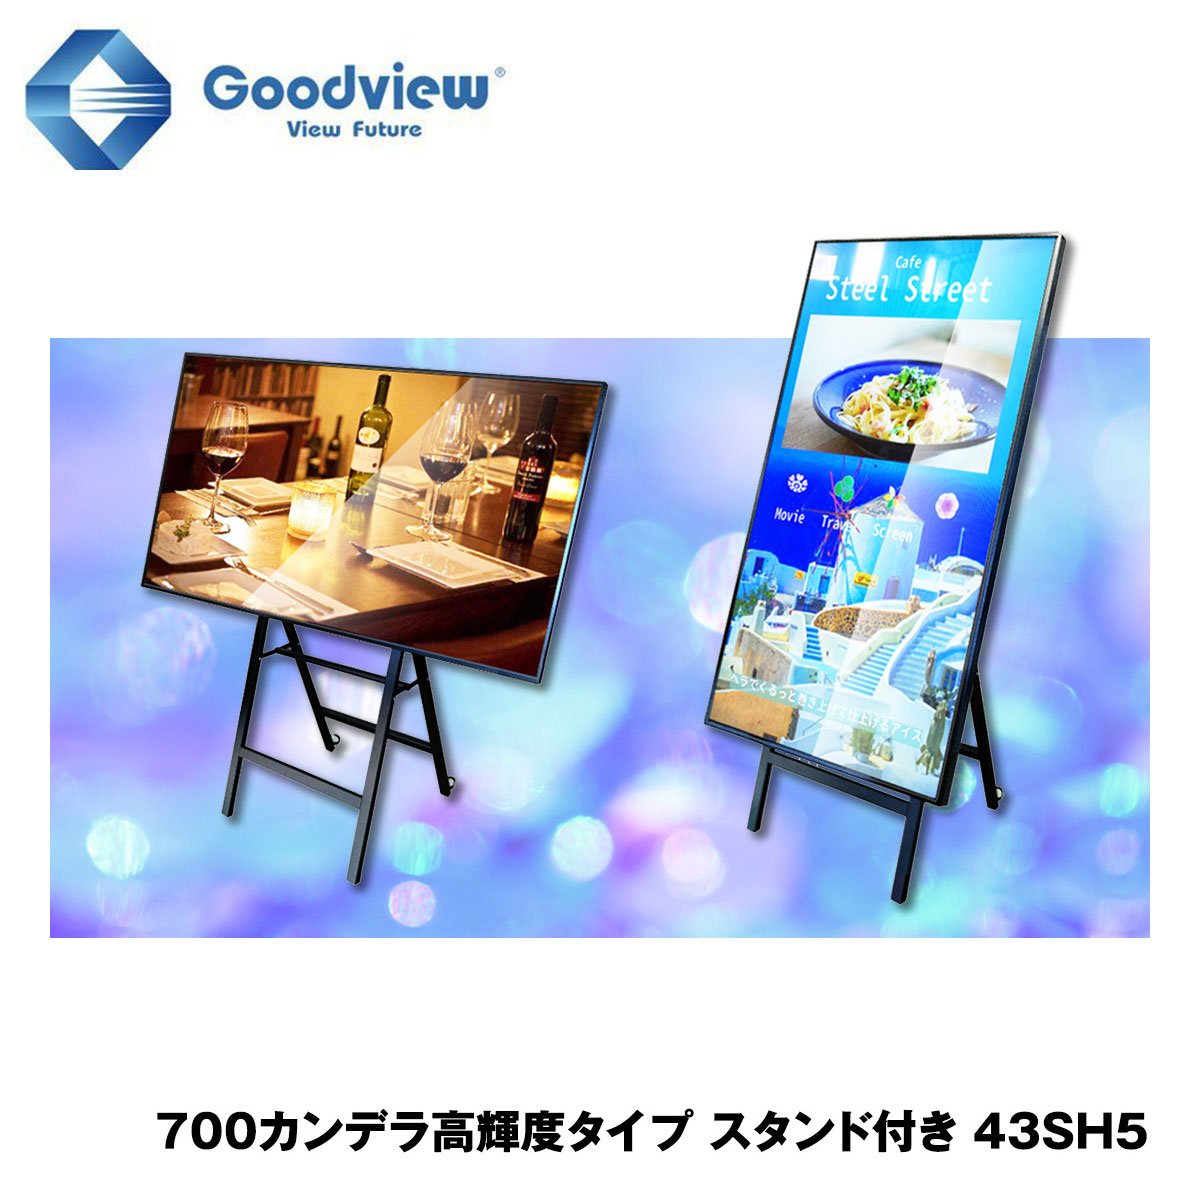 Goodview デジタルサイネージ 高輝度タイプ イーゼルスタンドセット 700カンデラ 43型【43SH5】